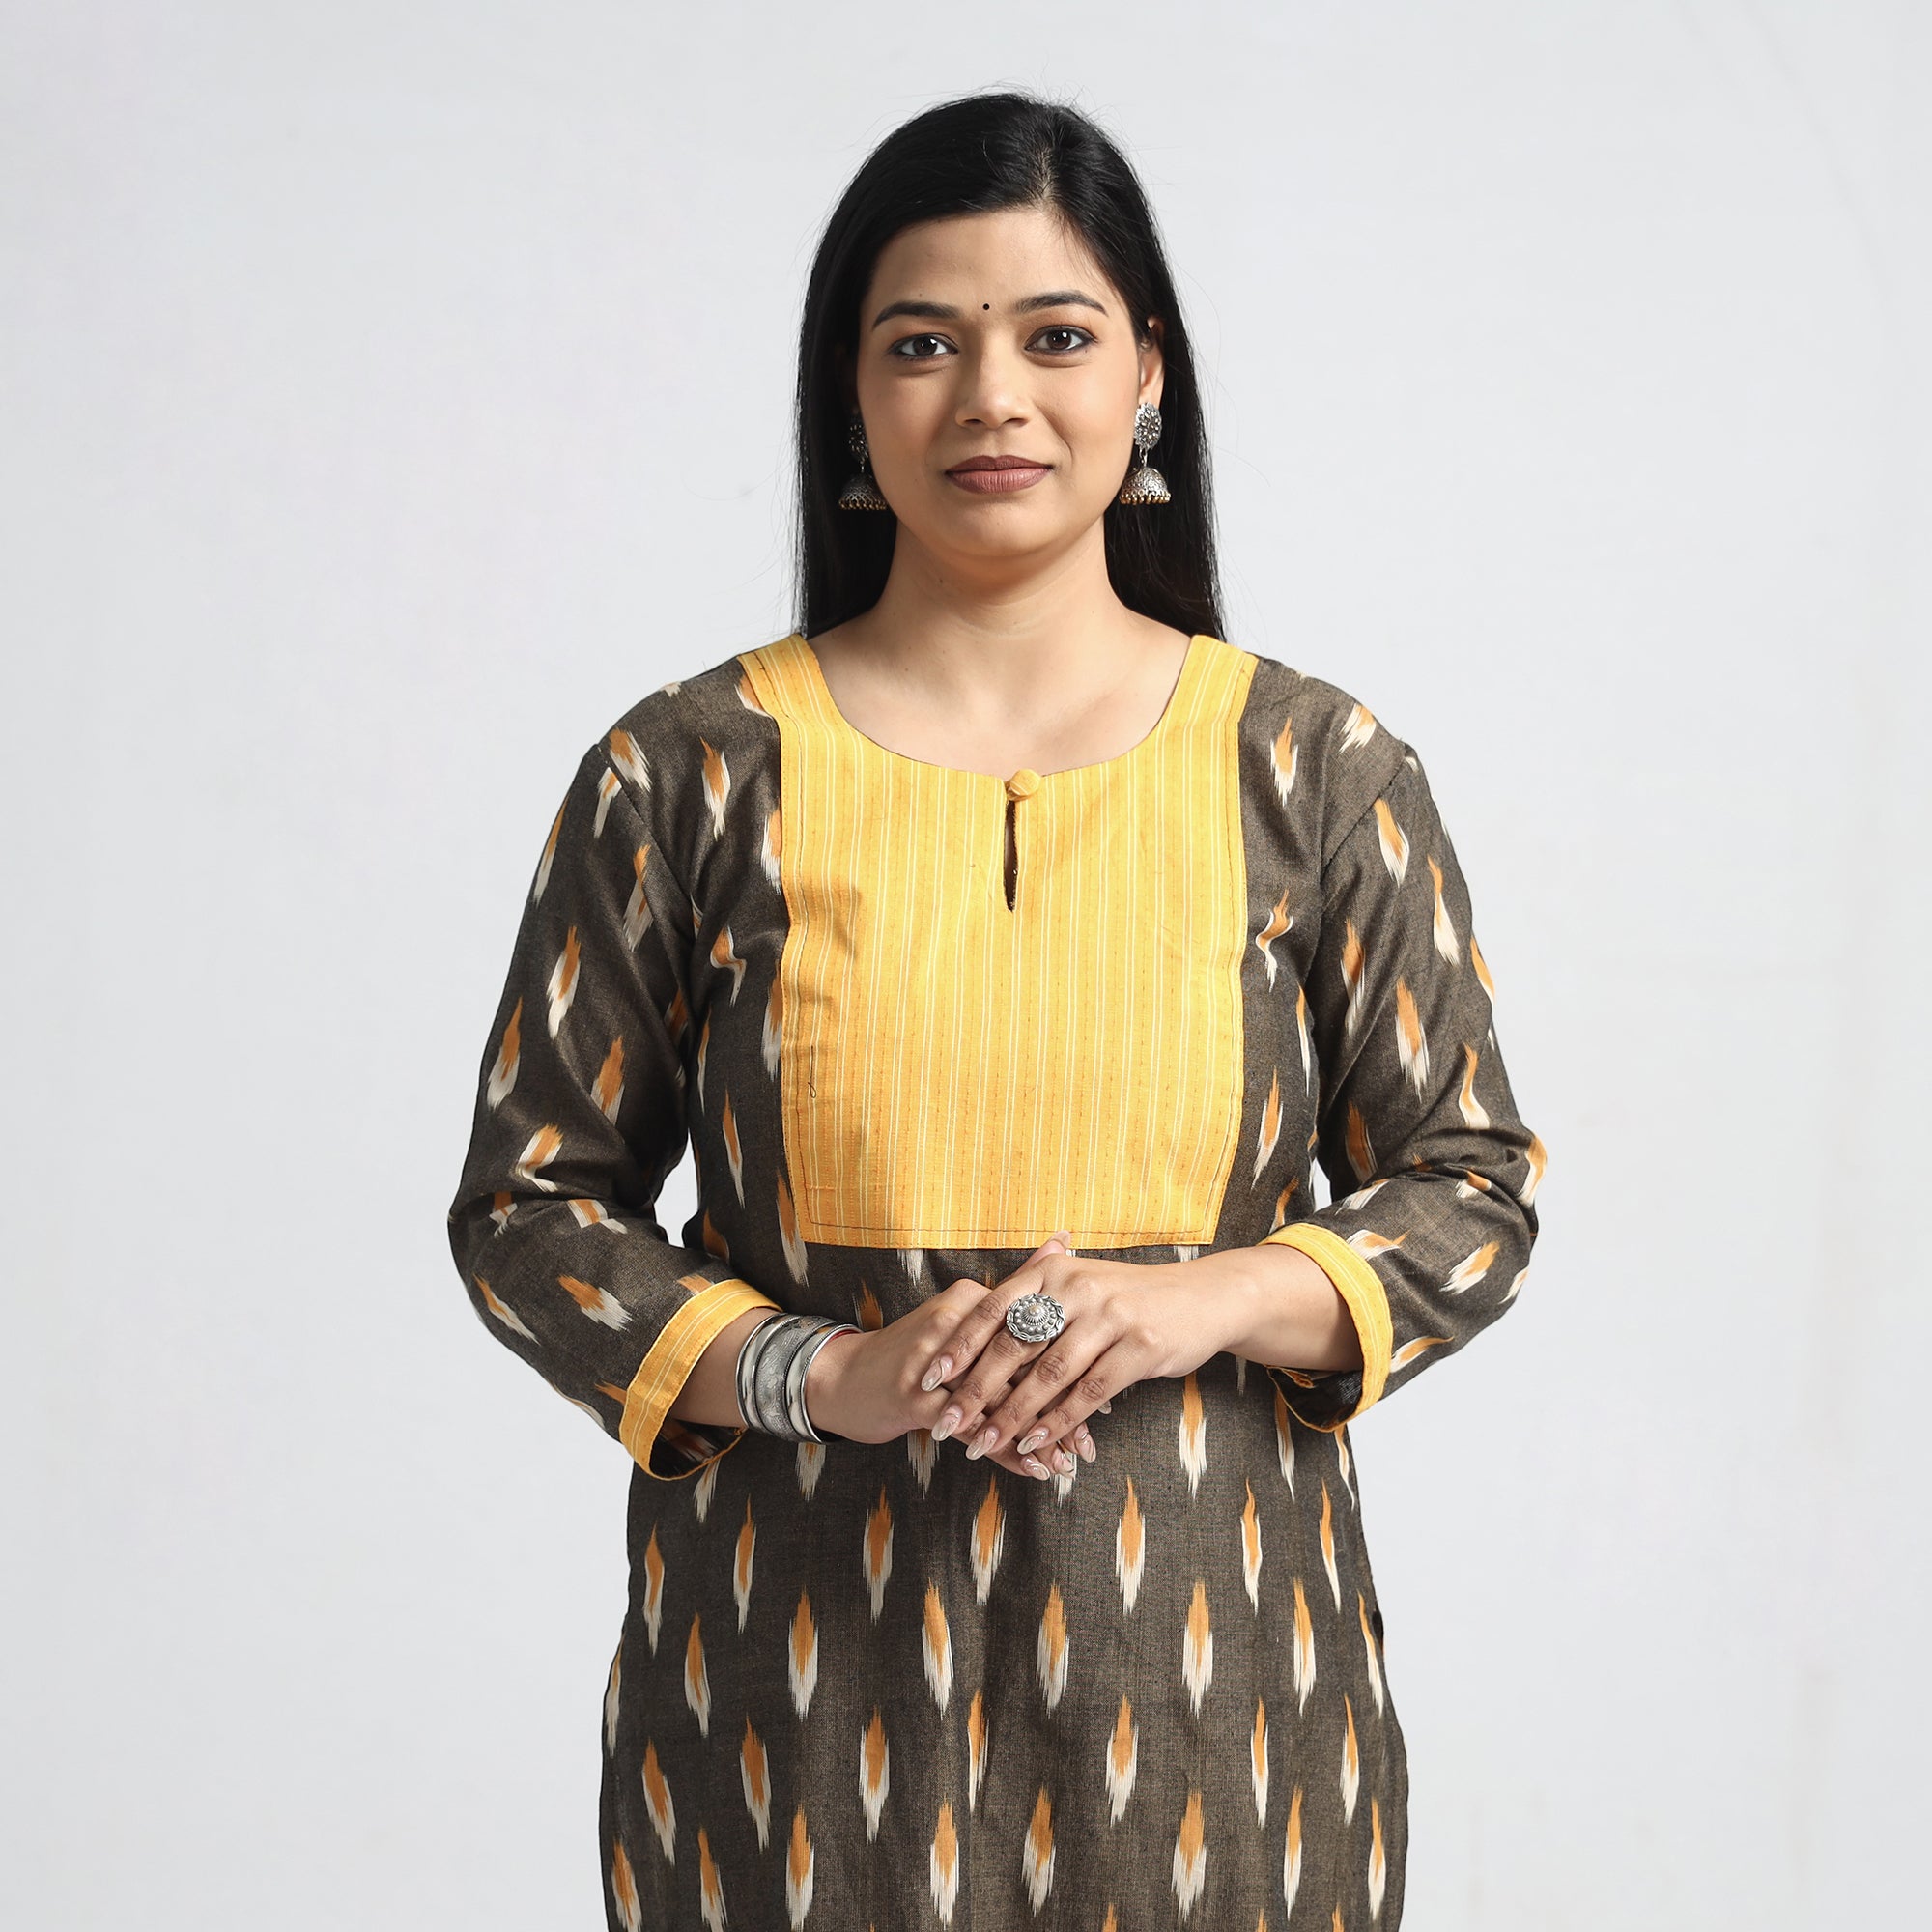 Sripathi Priyanka - Nizamabad, Telangana, India | Professional Profile |  LinkedIn